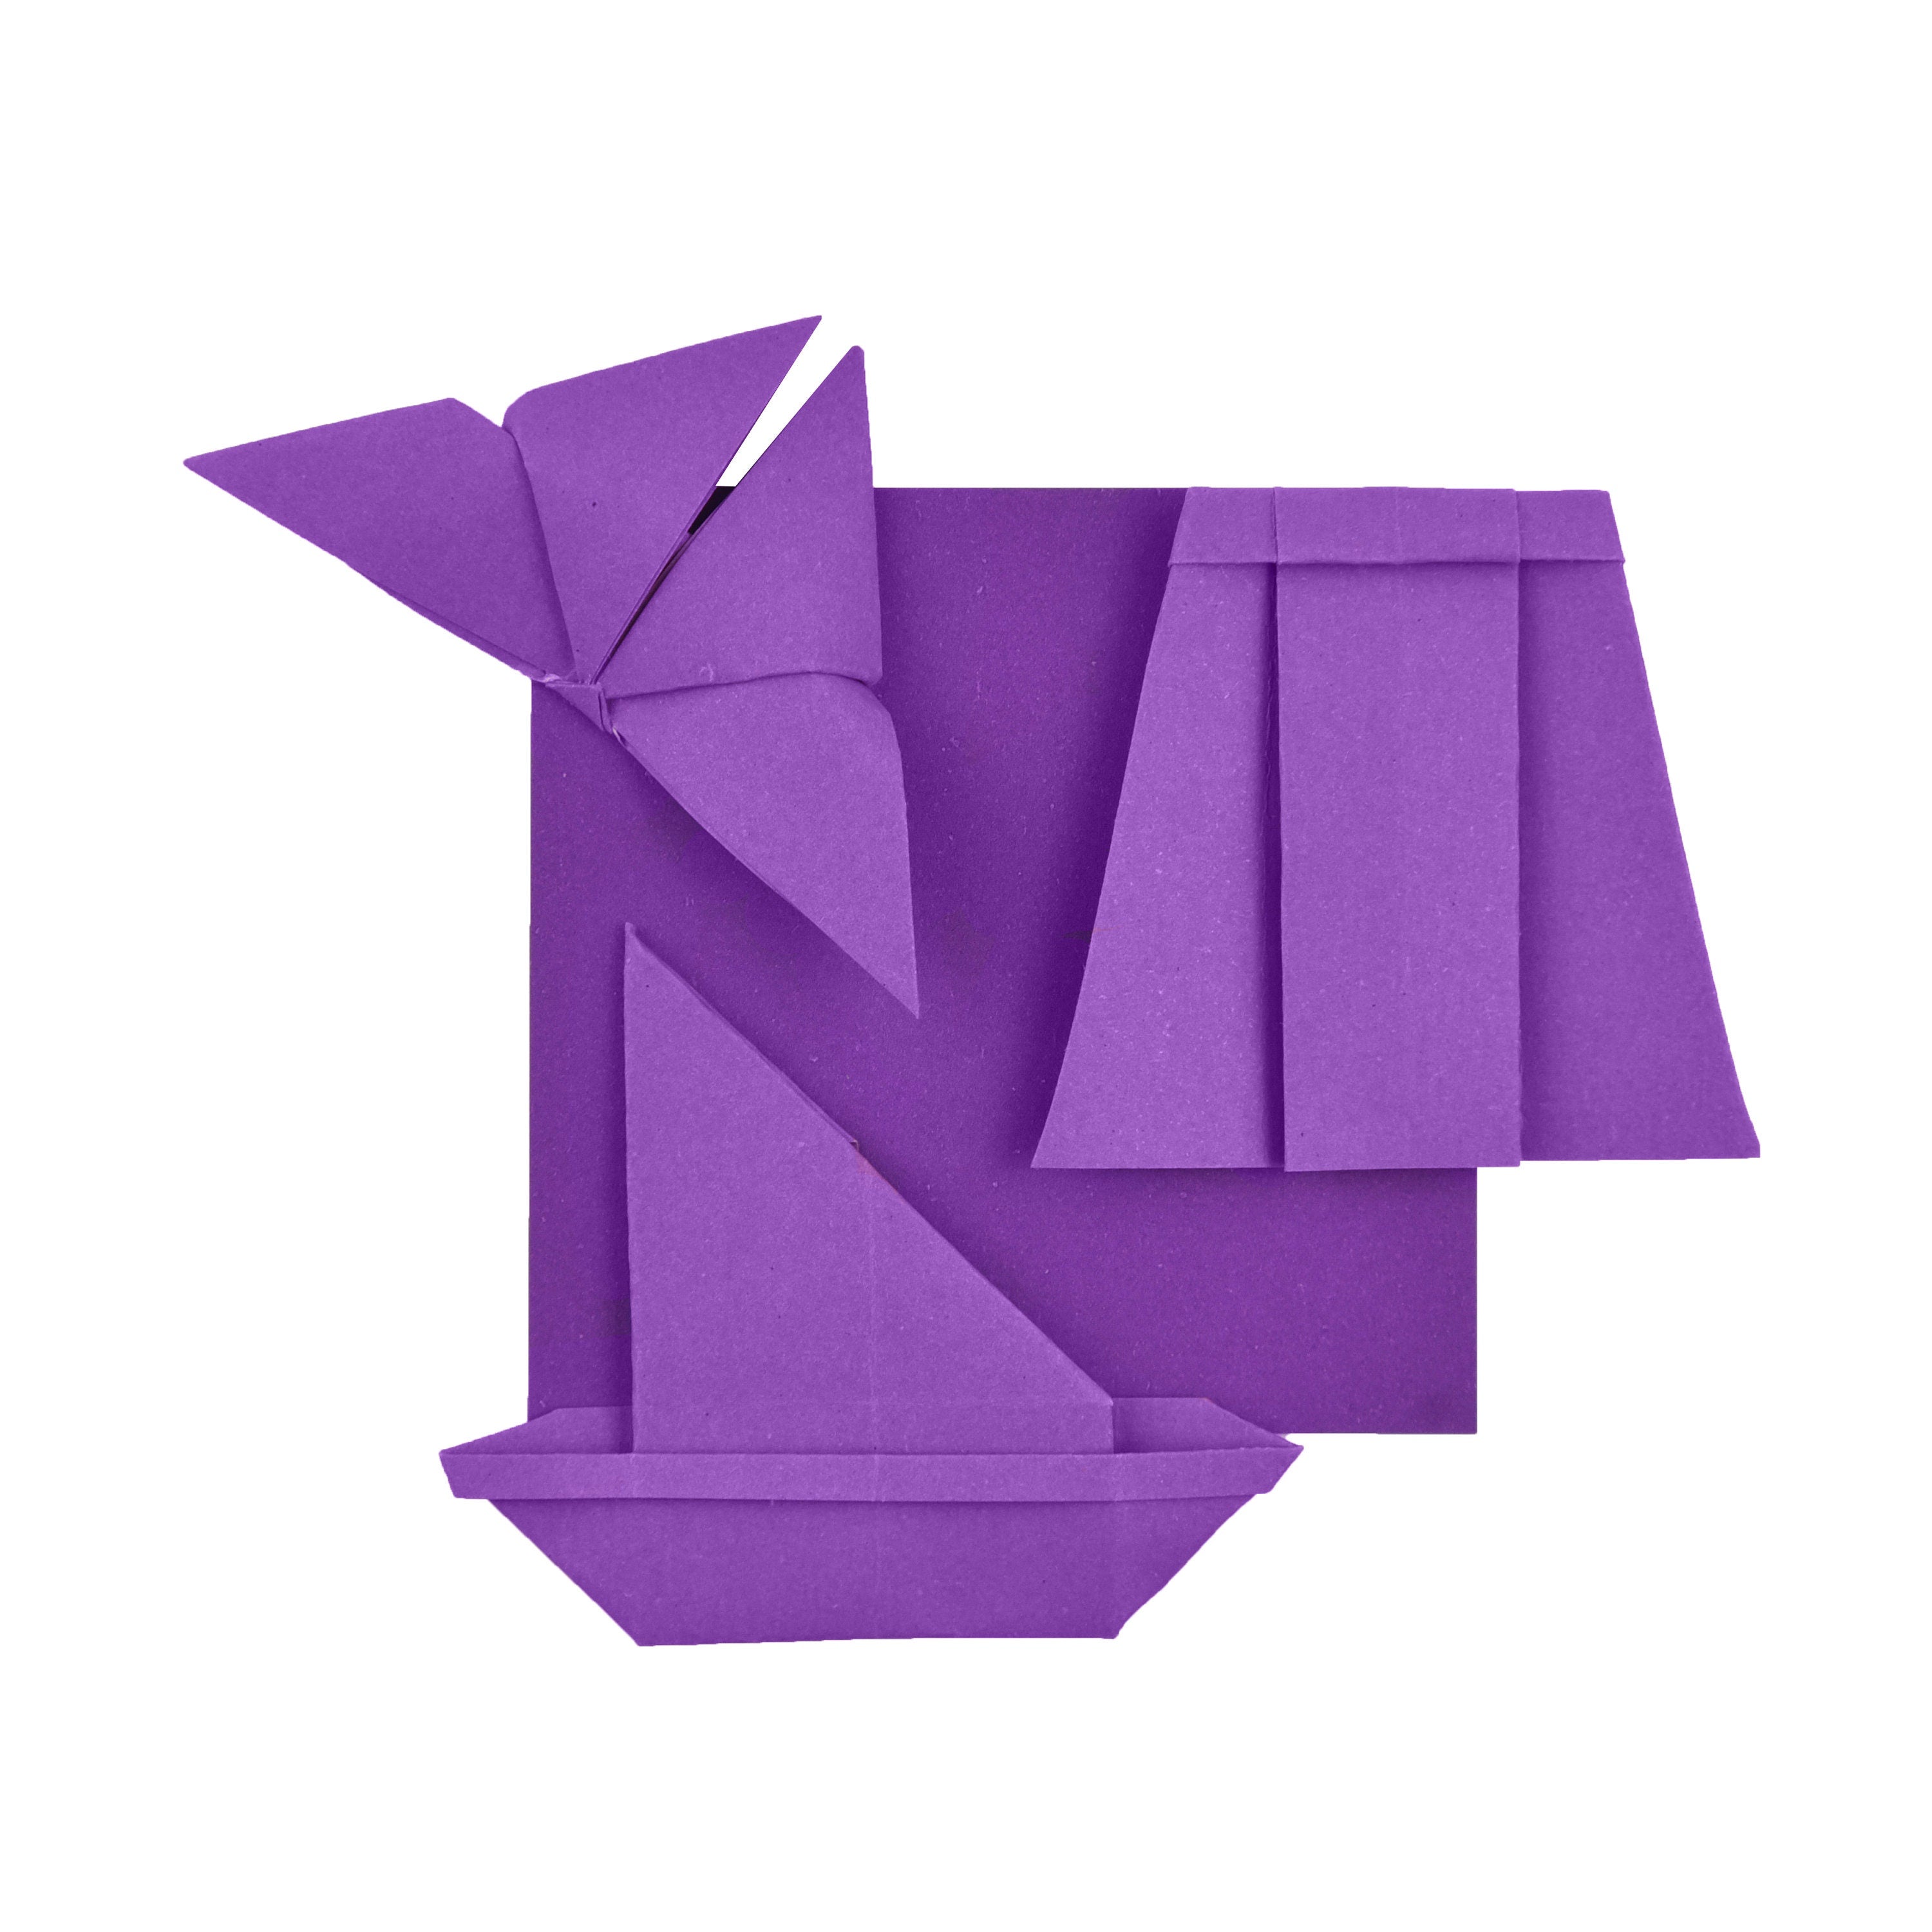 100 Hojas de Papel Origami - 6x6 pulgadas - Paquete de Papel Cuadrado para Plegar, Grullas de Origami y Decoración - P04